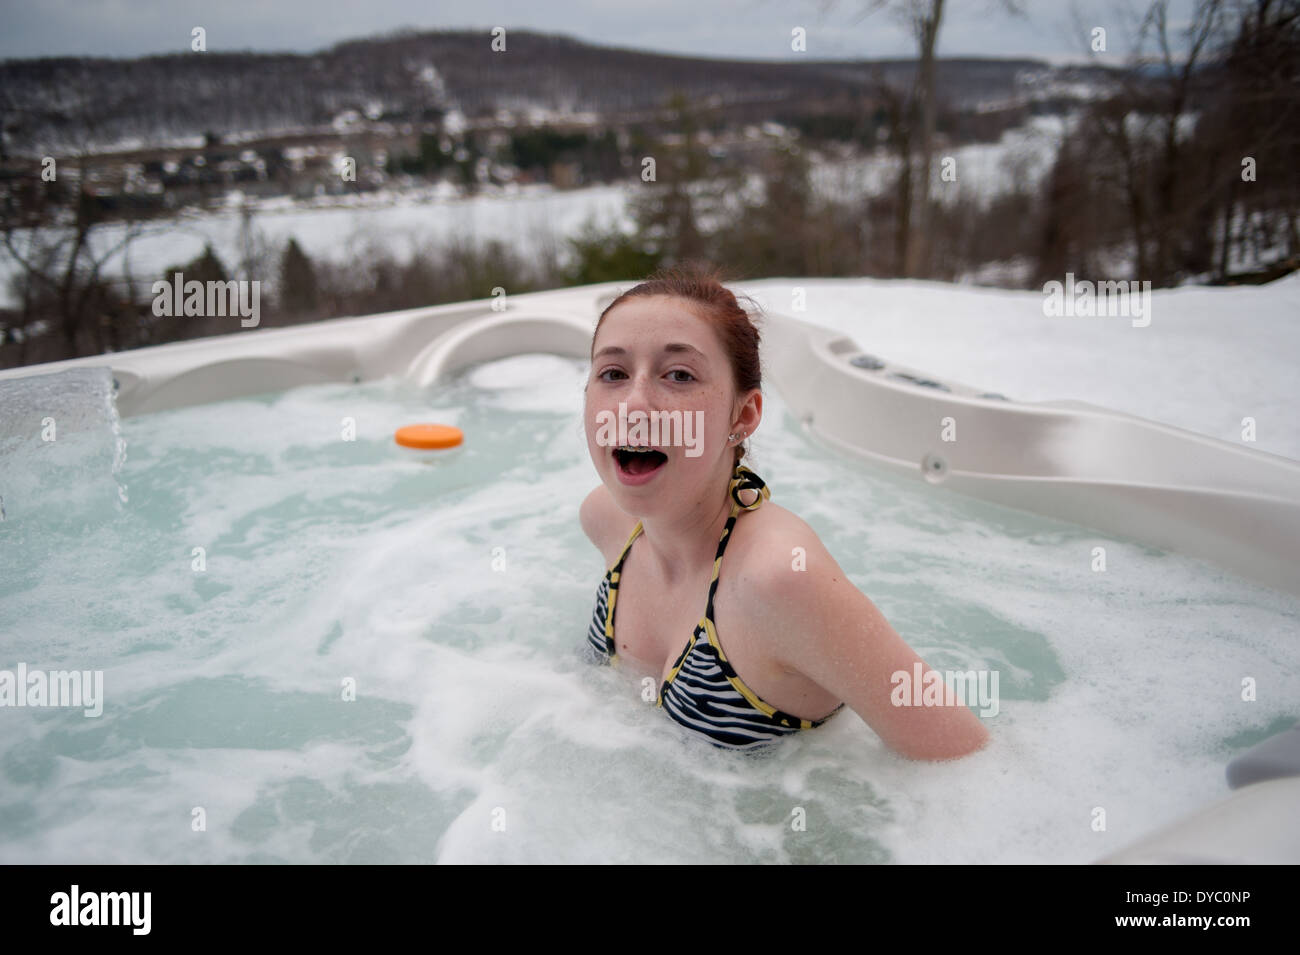 Adolescente choquée par la température de l'eau chaude dans un bain à remous dans les montagnes enneigées Banque D'Images